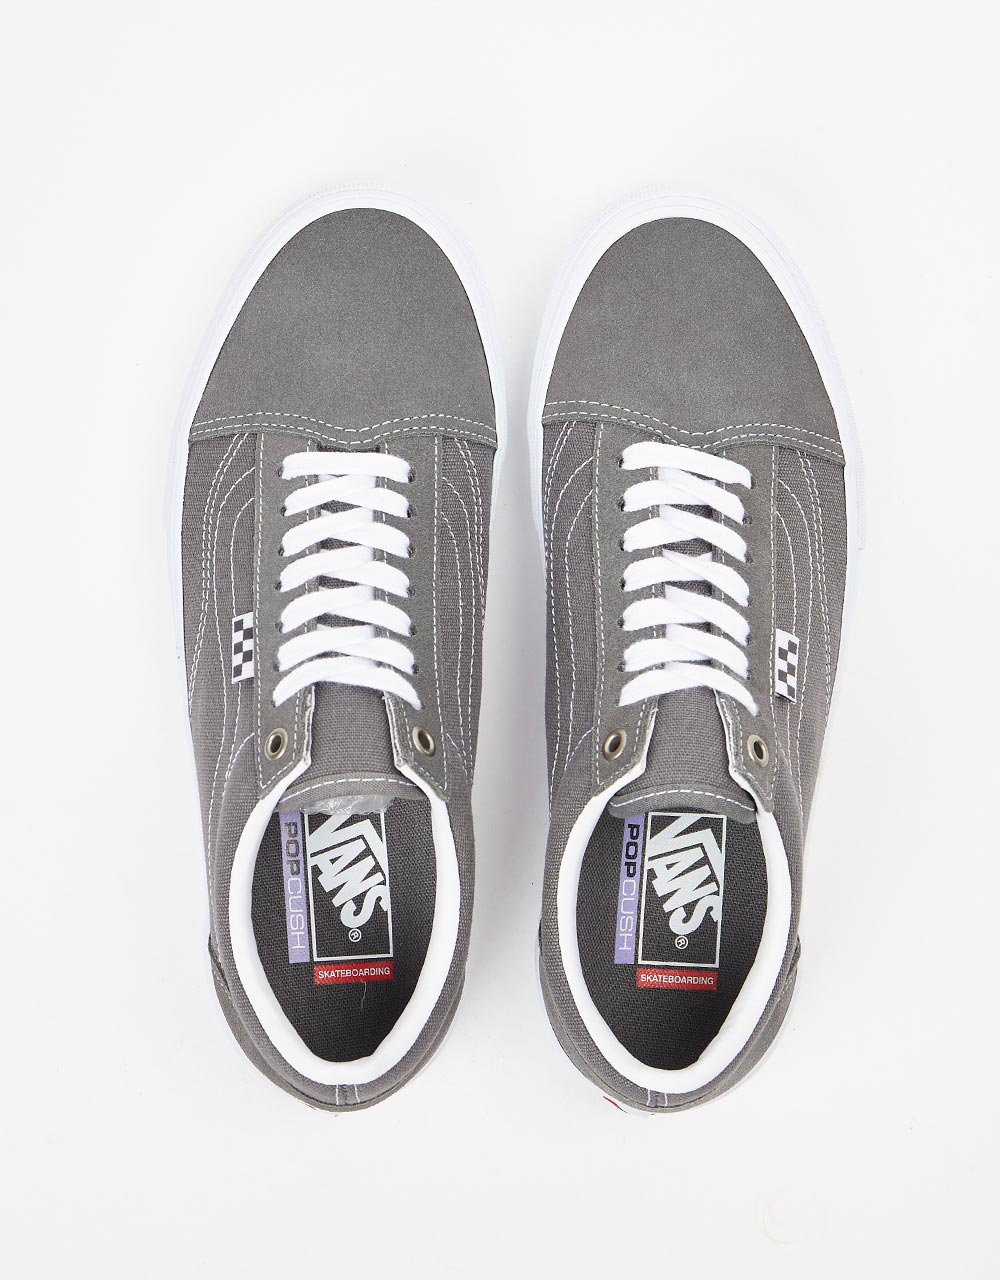 Vans Skate Old Skool Shoes - Pewter/True White